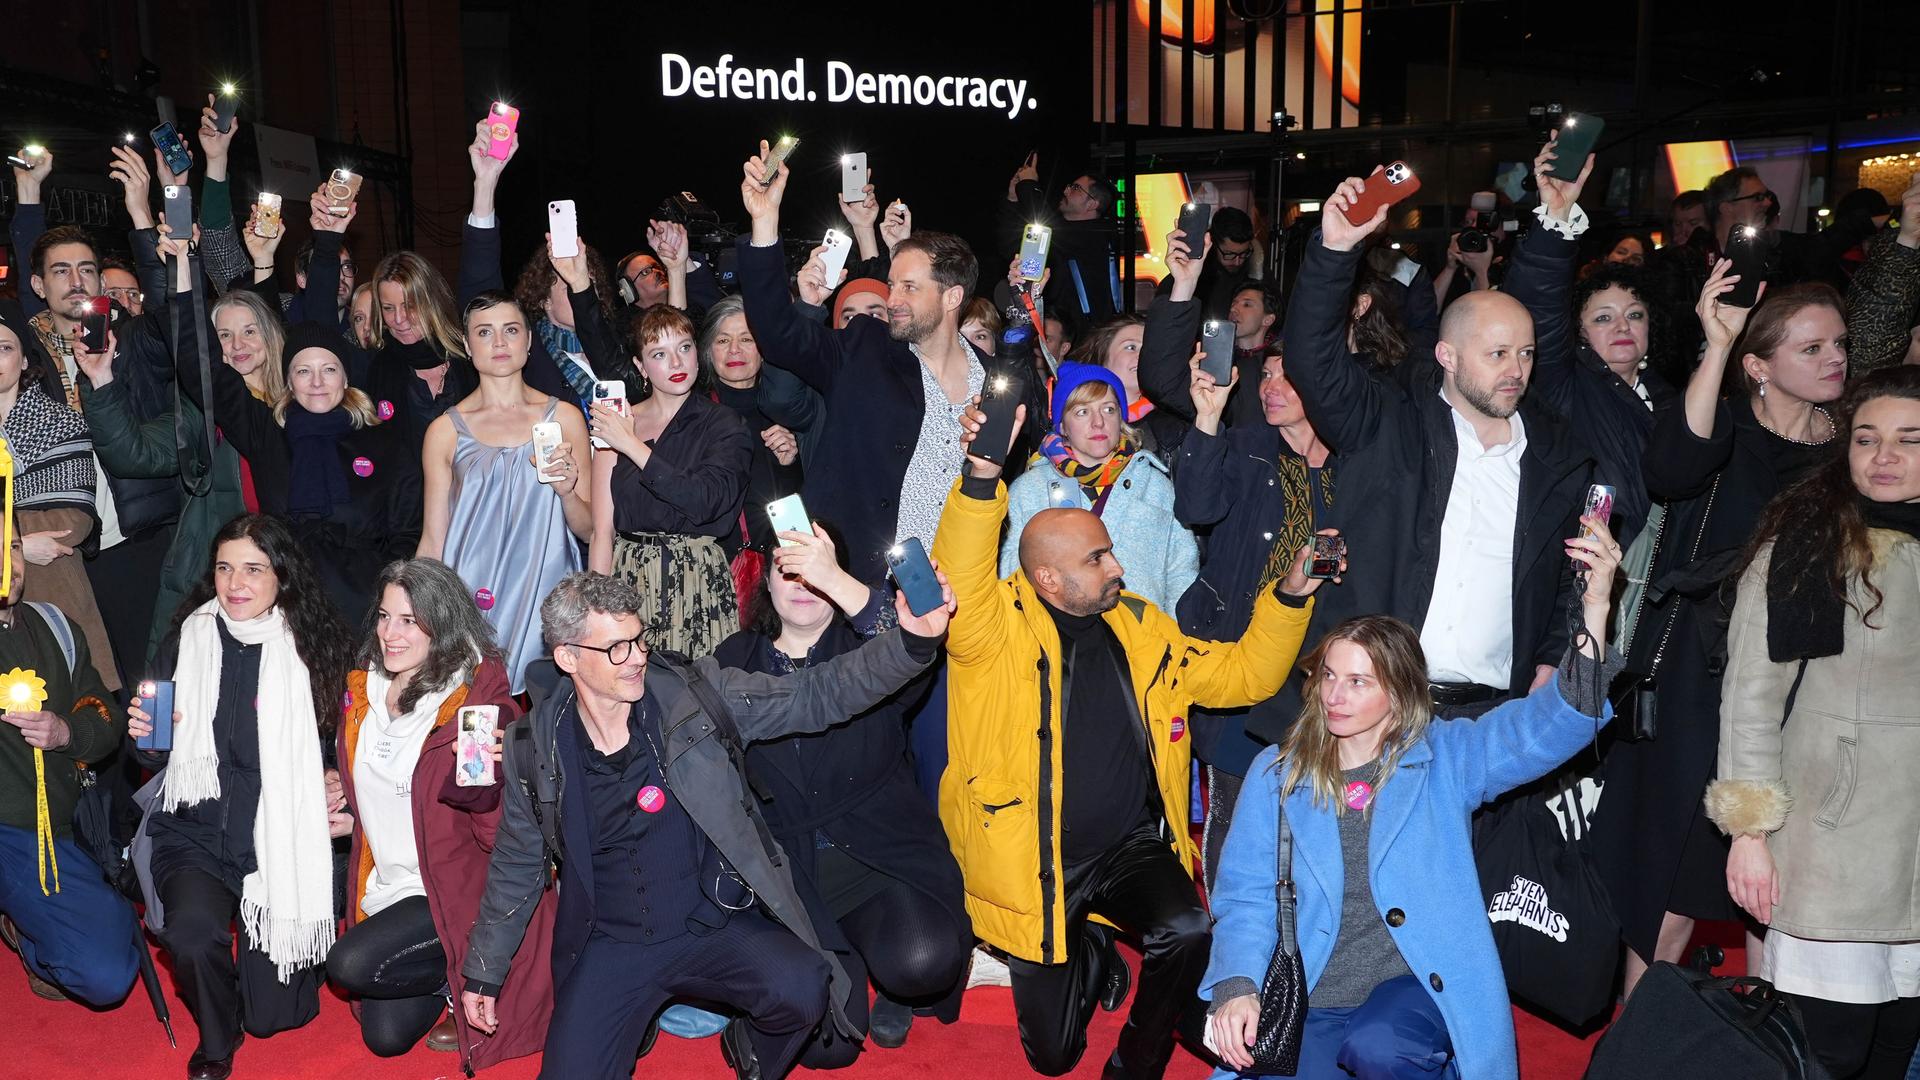 Eine Gruppe Schauspieler hält ihre Handys in die Luft. Im Hintergrund ist der Schriftzug "Defend Democracy" zu lesen.